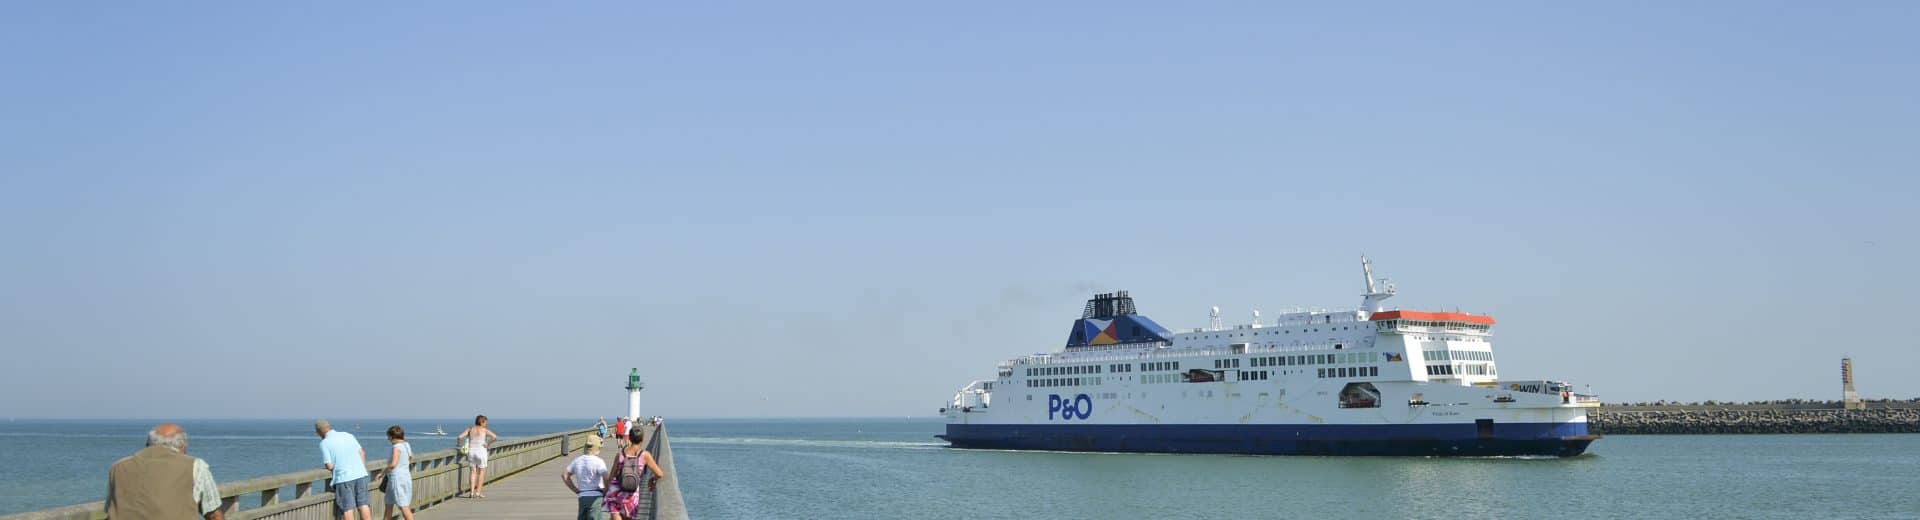 Calais ferry 2019-2 ® Yannick Cadart